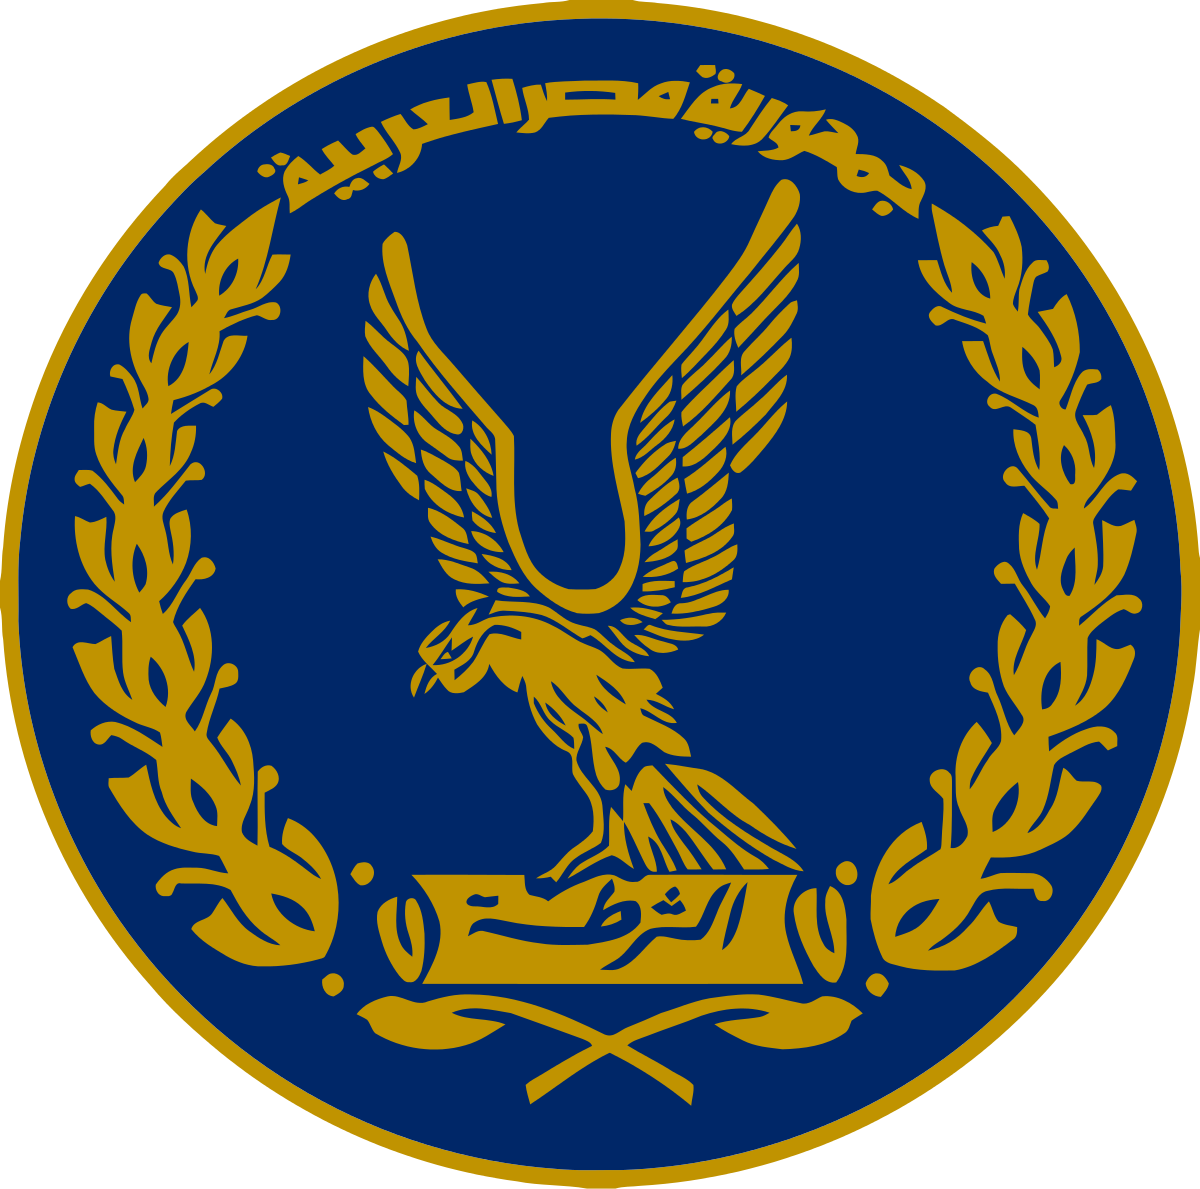 فالكون جروب تهنئ وزارة الداخلية بمناسبة عيد الشرطة المصرية الباسلة